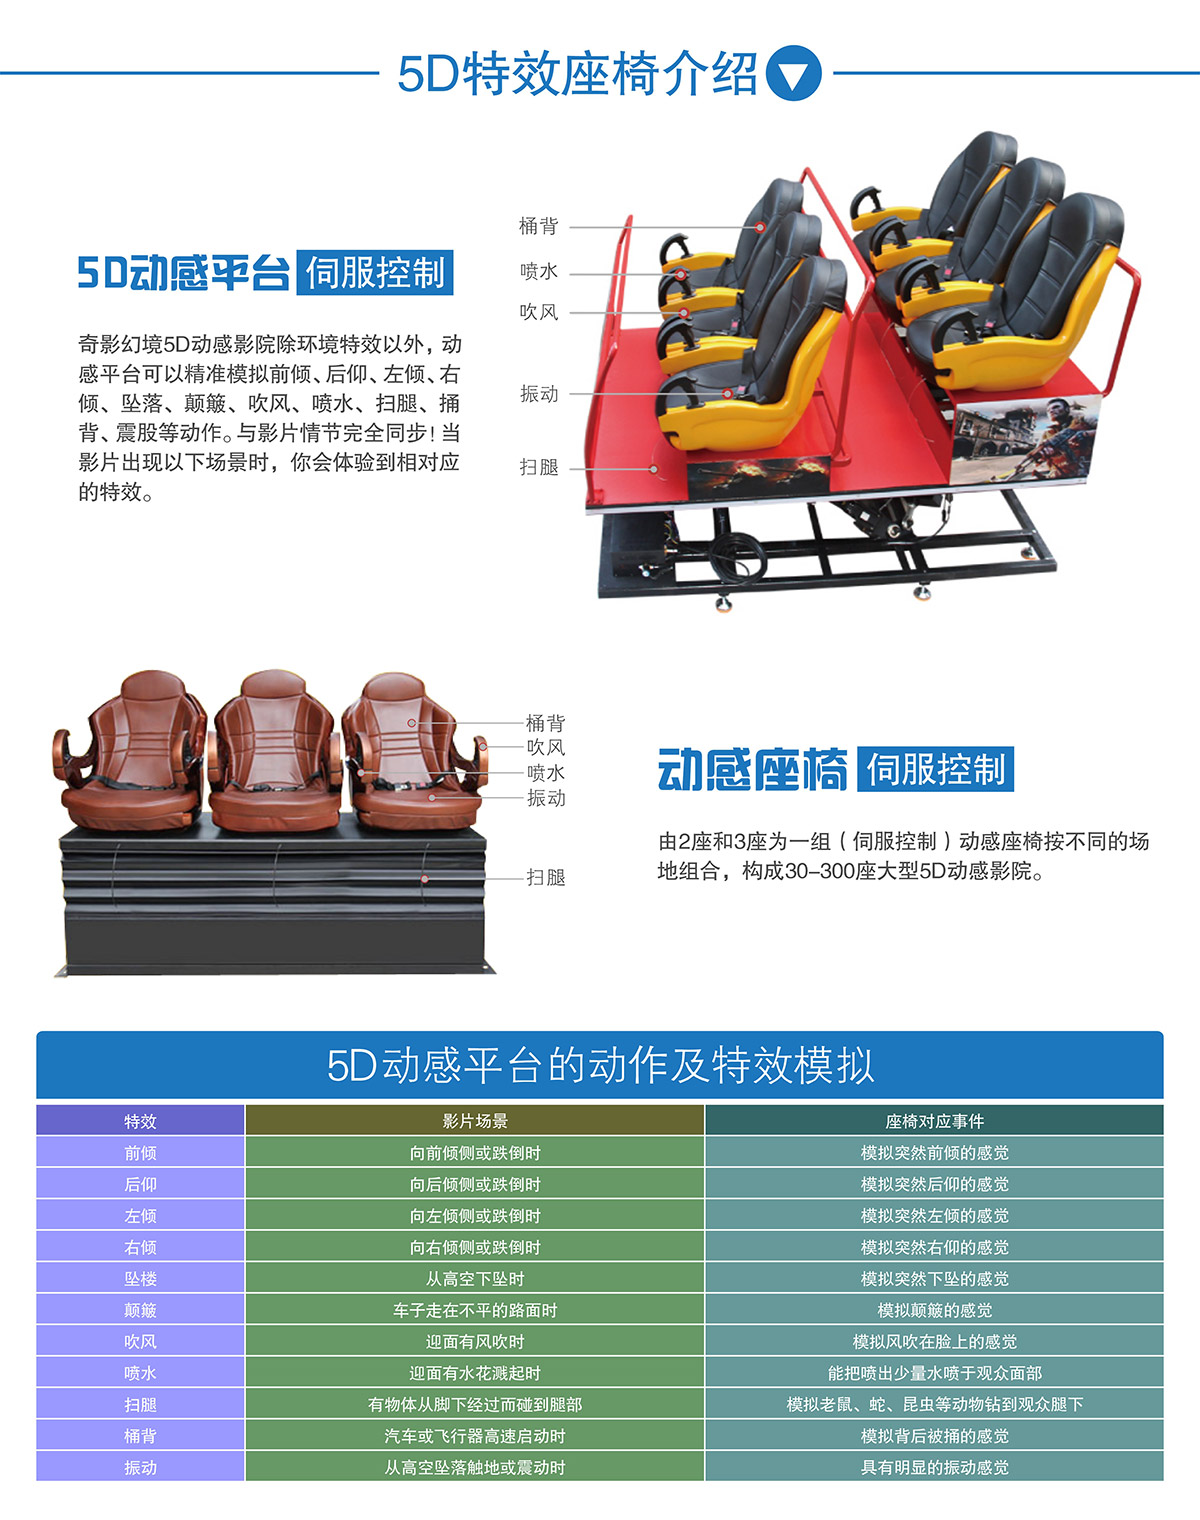 广东省广州奇影幻境5D特效座椅介绍.jpg